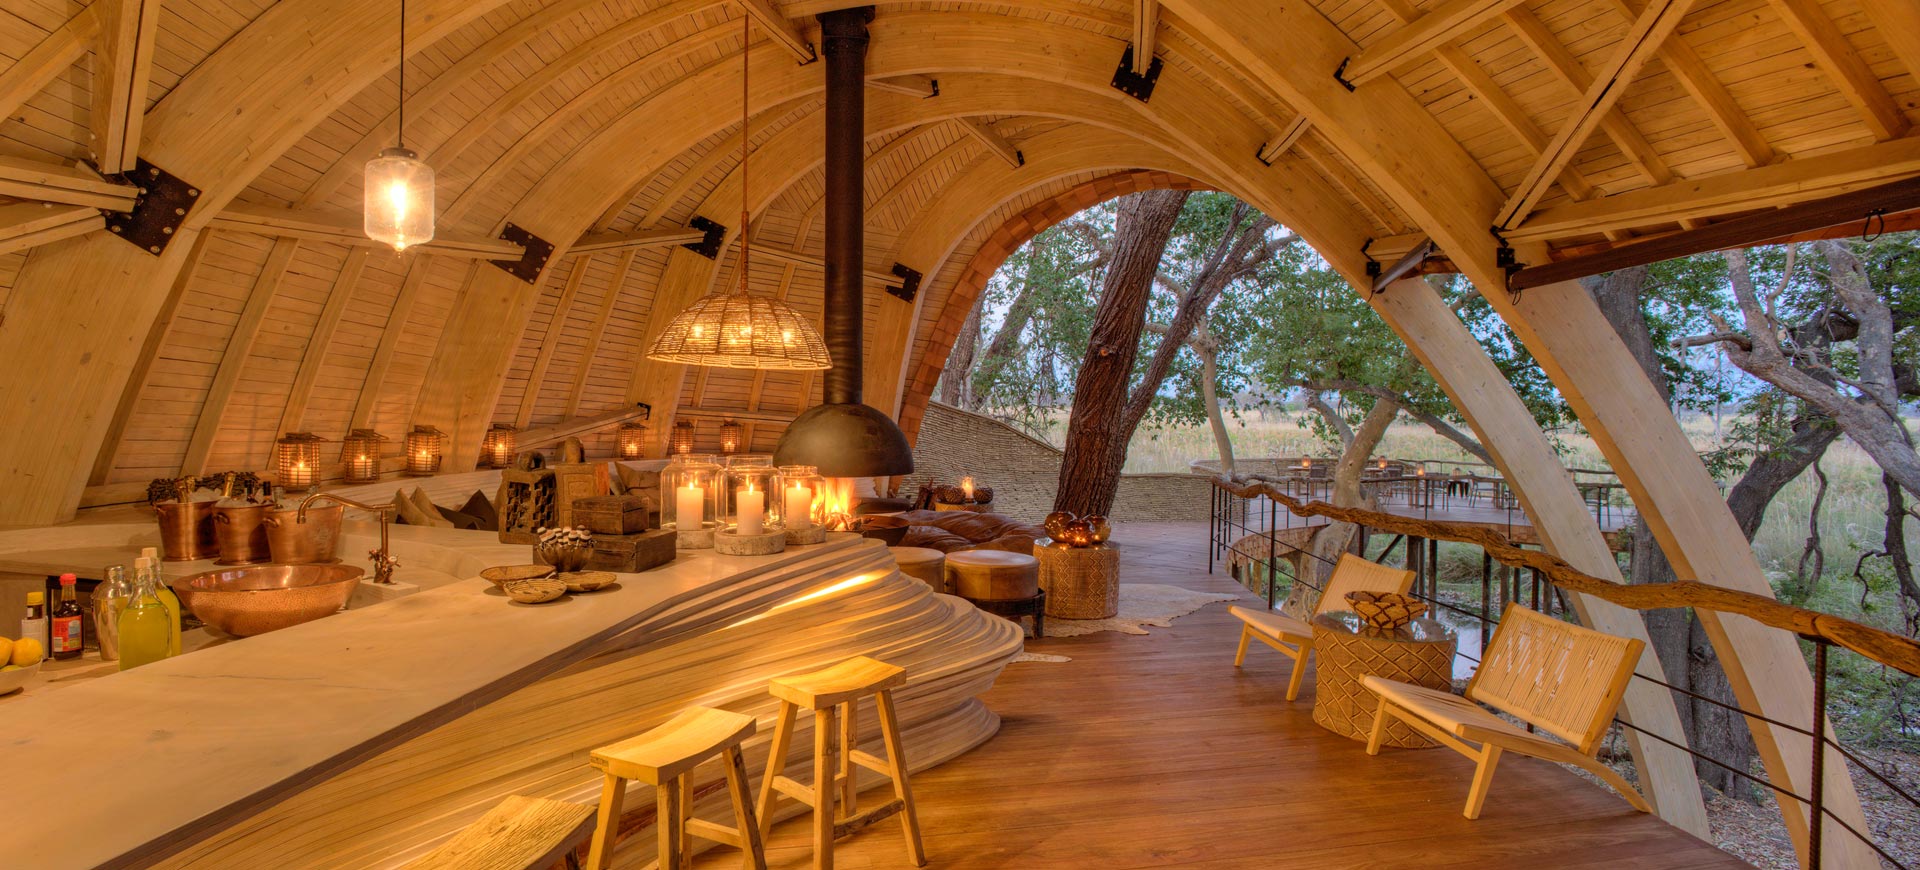 Sandibe Okavango Safari Lodge, a cozy lodge with lit candles and a view of the Safari